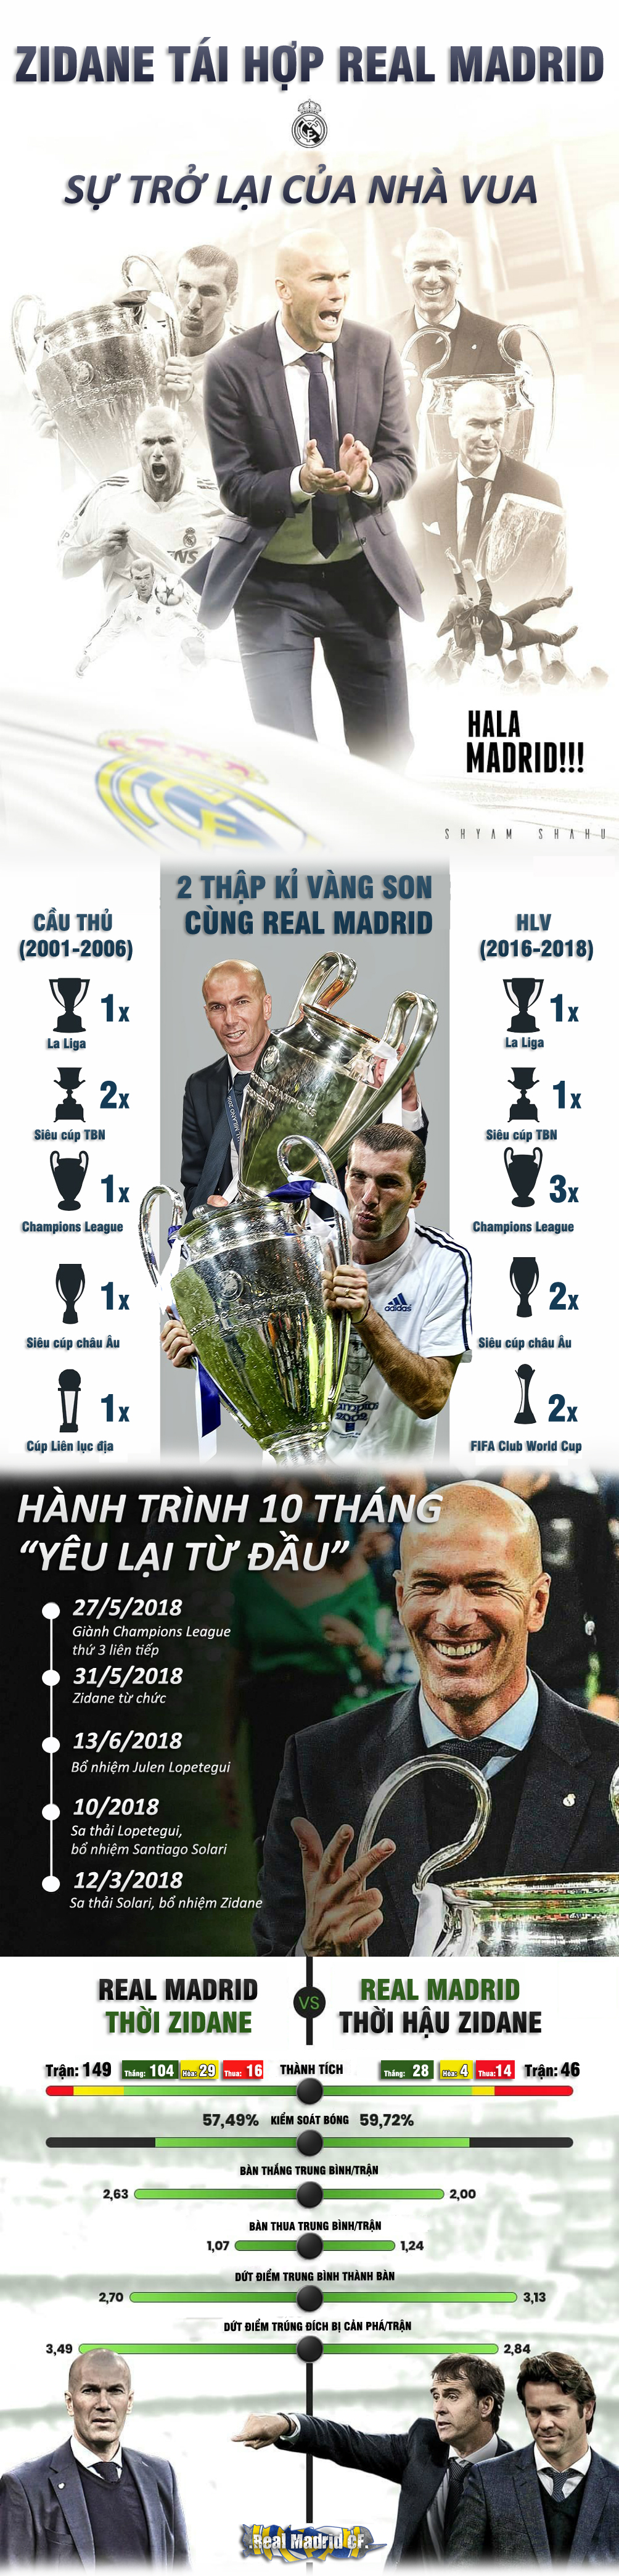 Real tái hợp Zidane: Nhà vua trở lại, xây dựng đế chế Galacticos 3.0 - 1